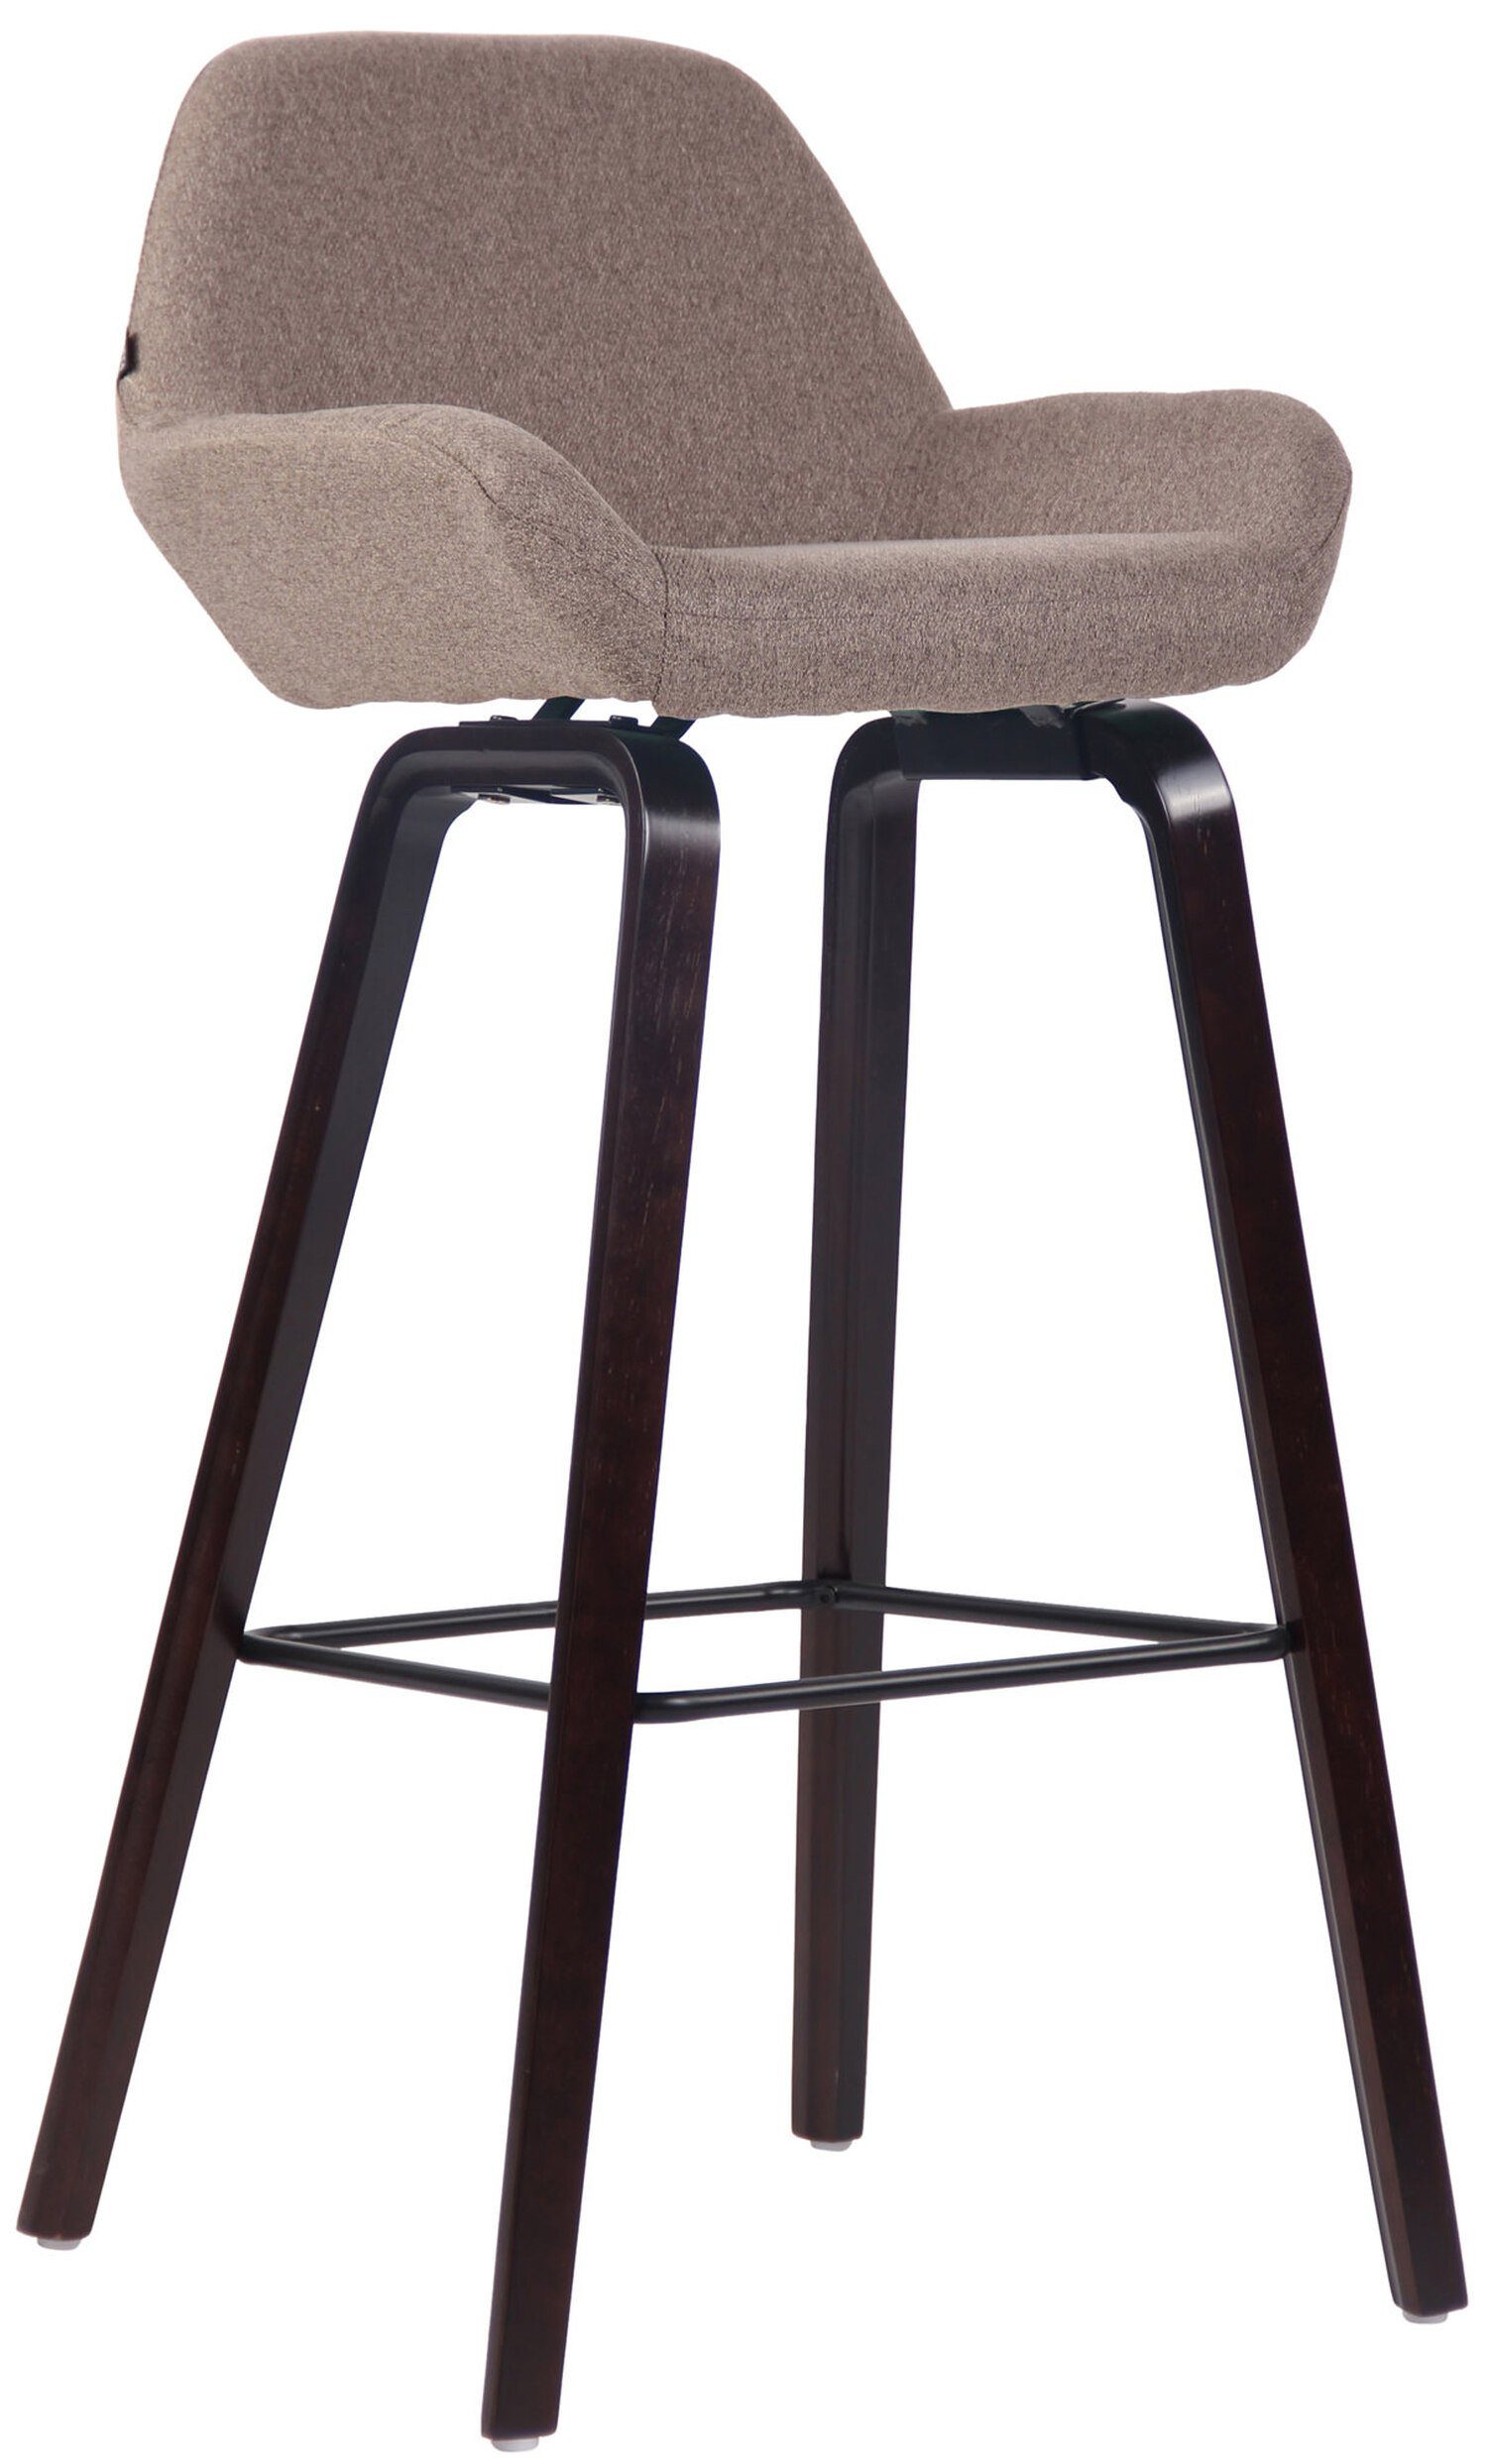 TPFLiving Barhocker New York mit bequemer Rückenlehne und angenehmer Fußstütze (Barstuhl Hocker für Theke & Küche - Tresenhocker), 4-Fuß Gestell Eichenholz walnus - Sitzfläche: Stoff Taupe